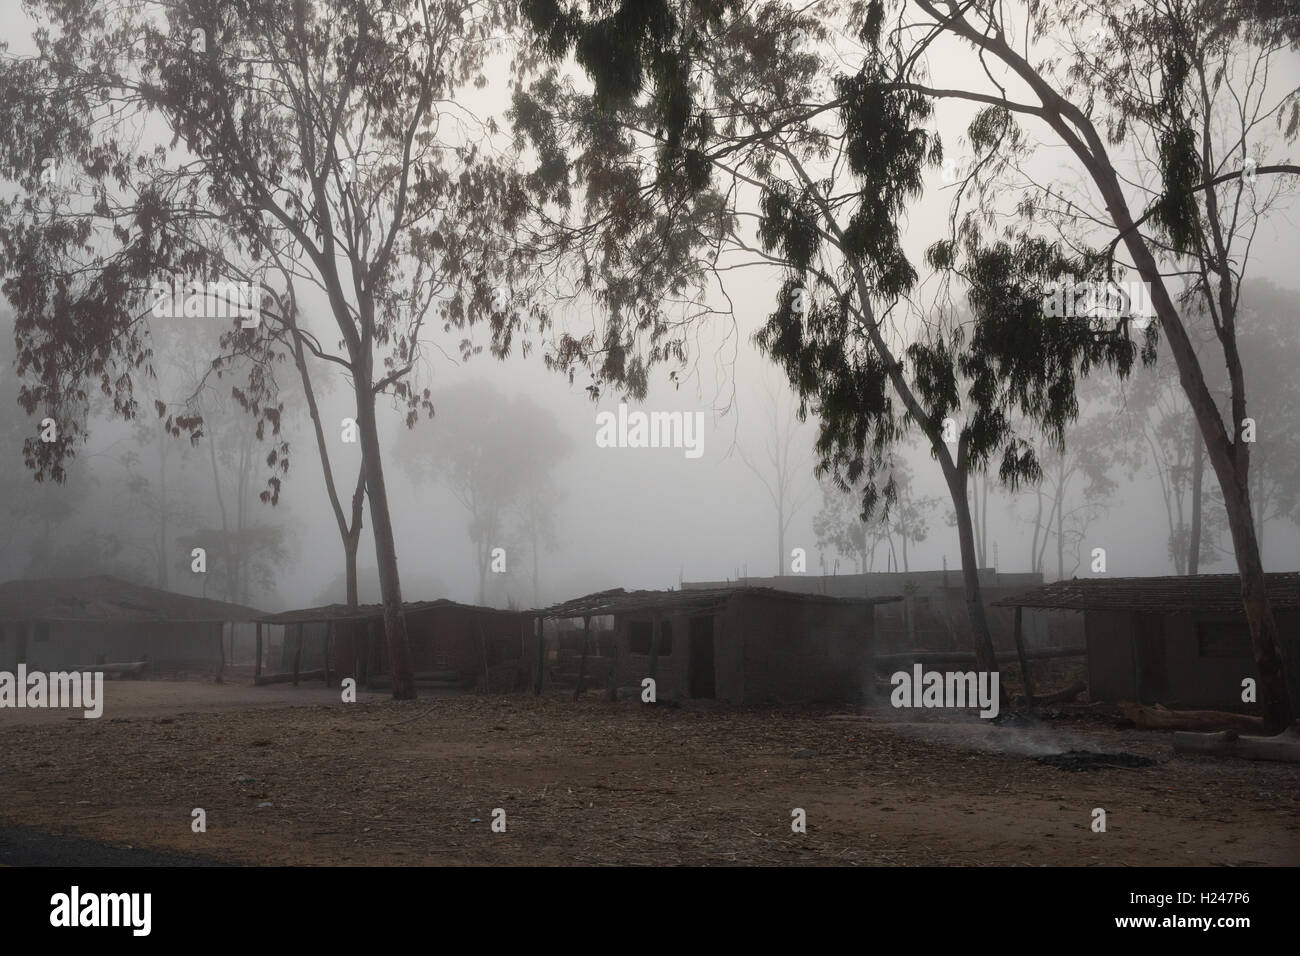 Villaggio Namina, Nampula Provincia, Mozambico, Agosto 2015: nebbia nelle prime ore della mattinata sulla strada per il villaggio di Nmina. Foto di Mike Goldwater Foto Stock